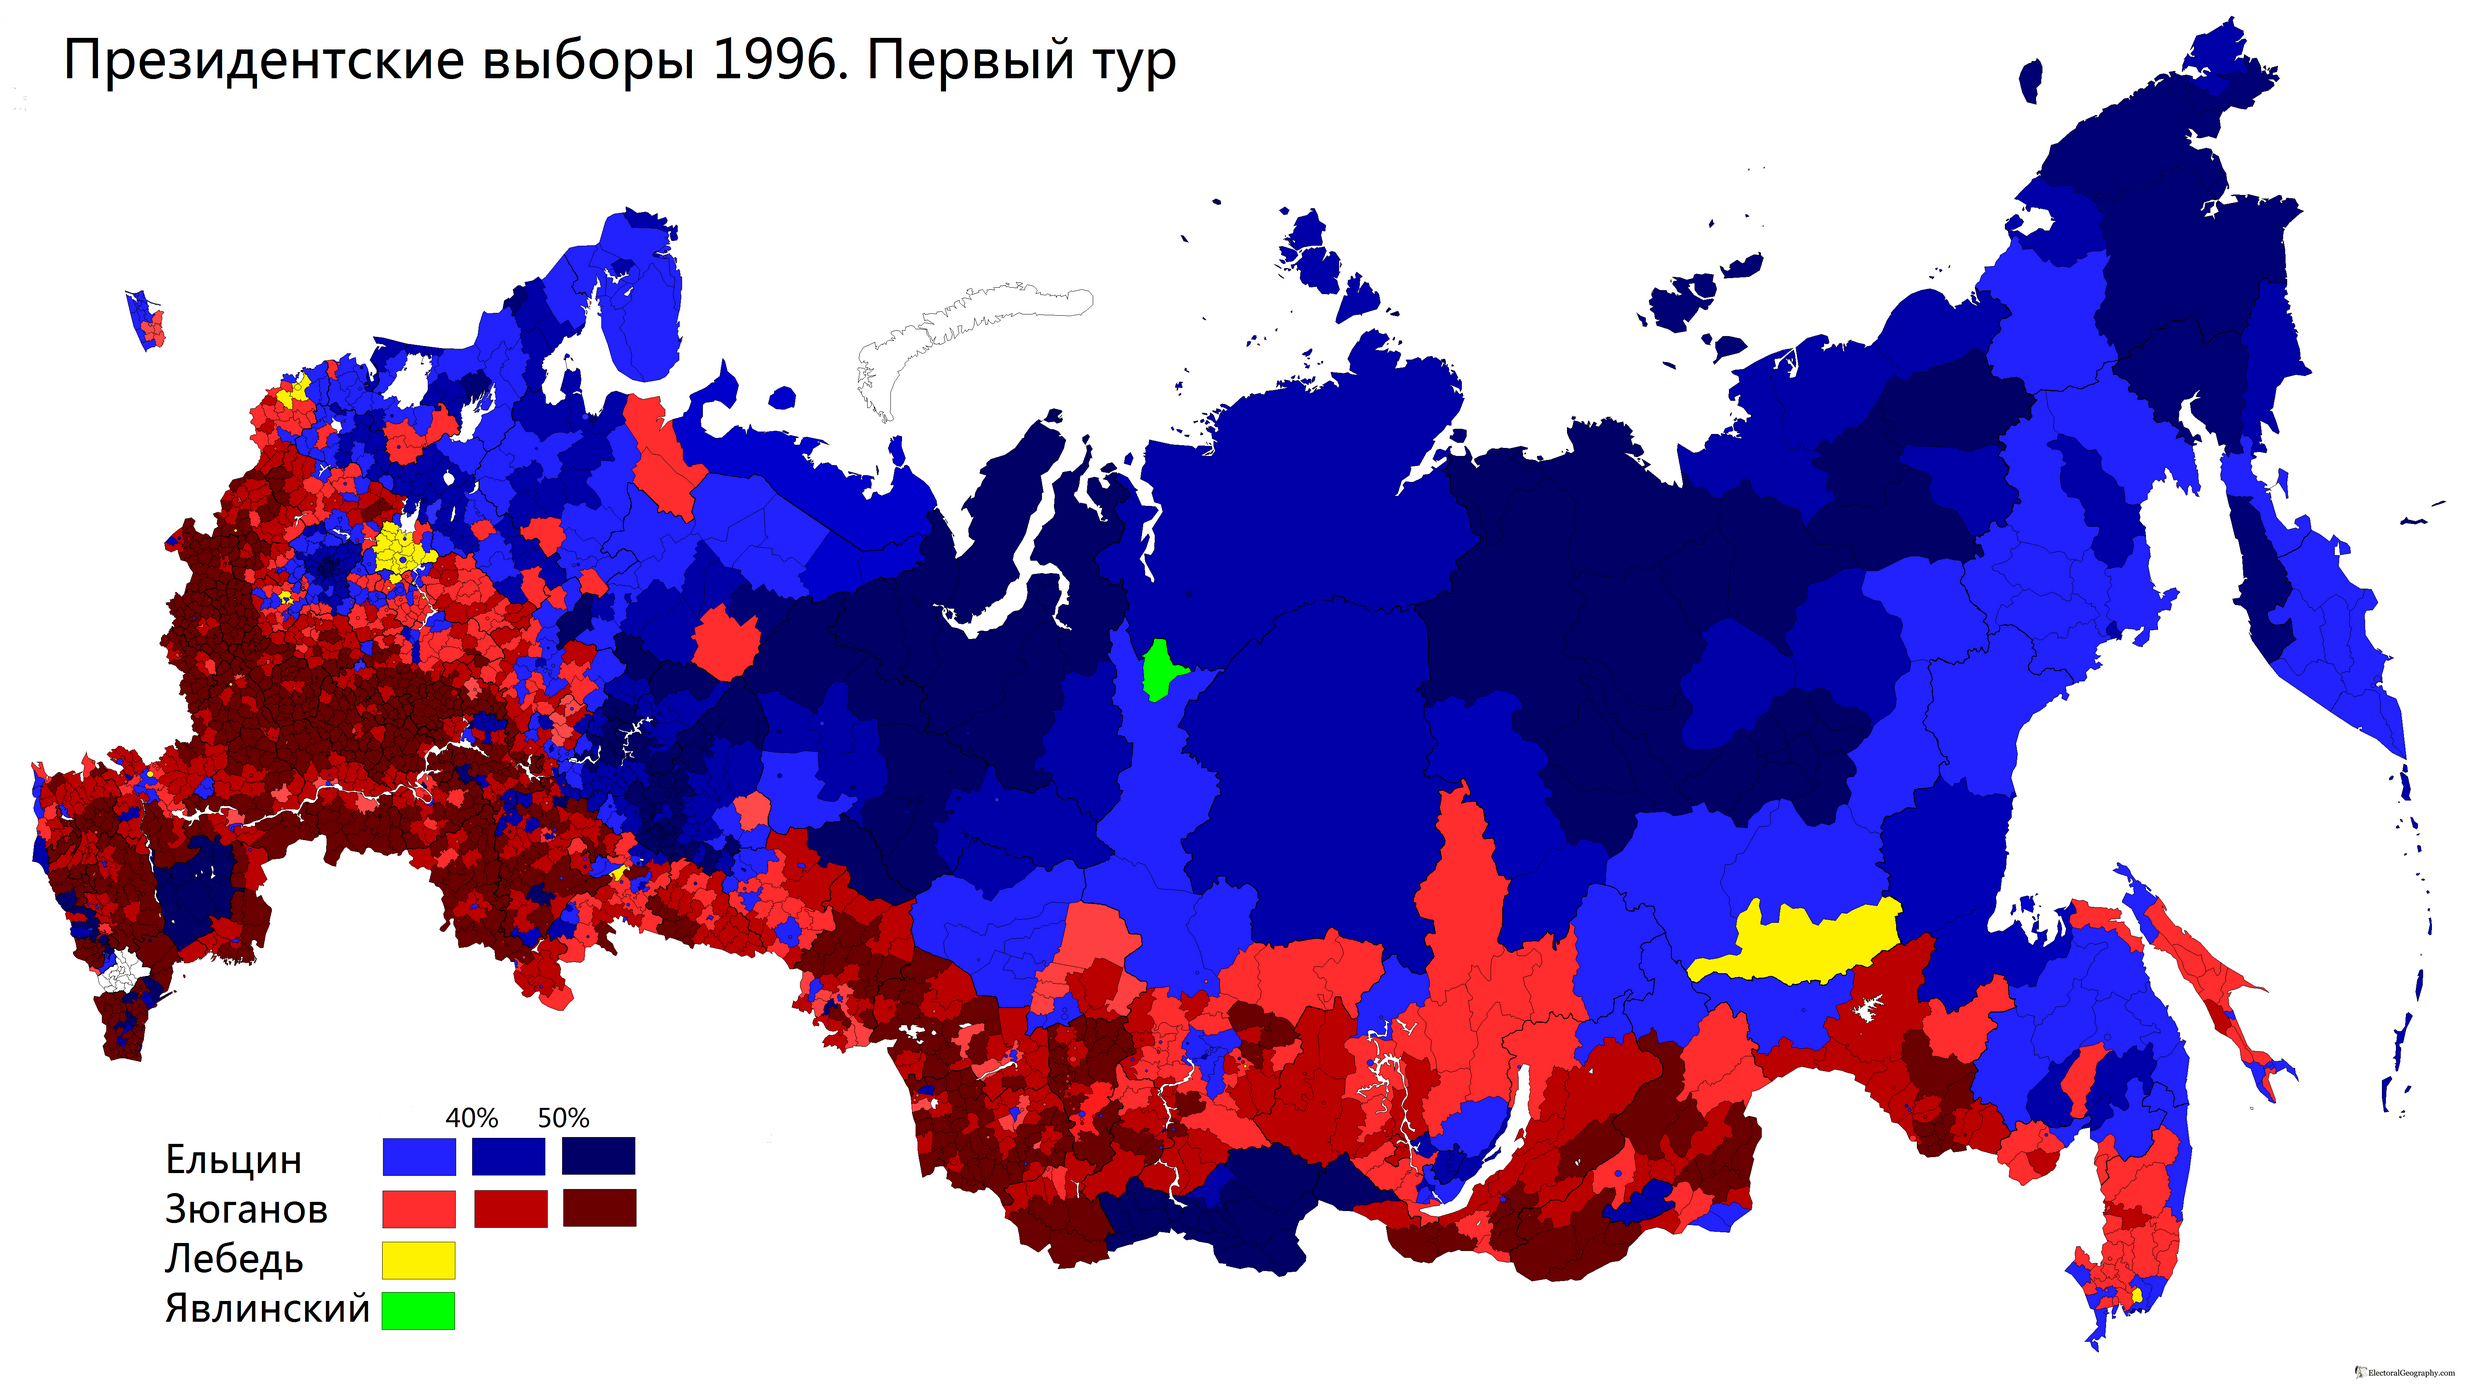 Карта выборов президента России 1996. Президентские выборы в России 1996 карта. Президентские выборы 1996 года в России. Карта выборов 1996 года.